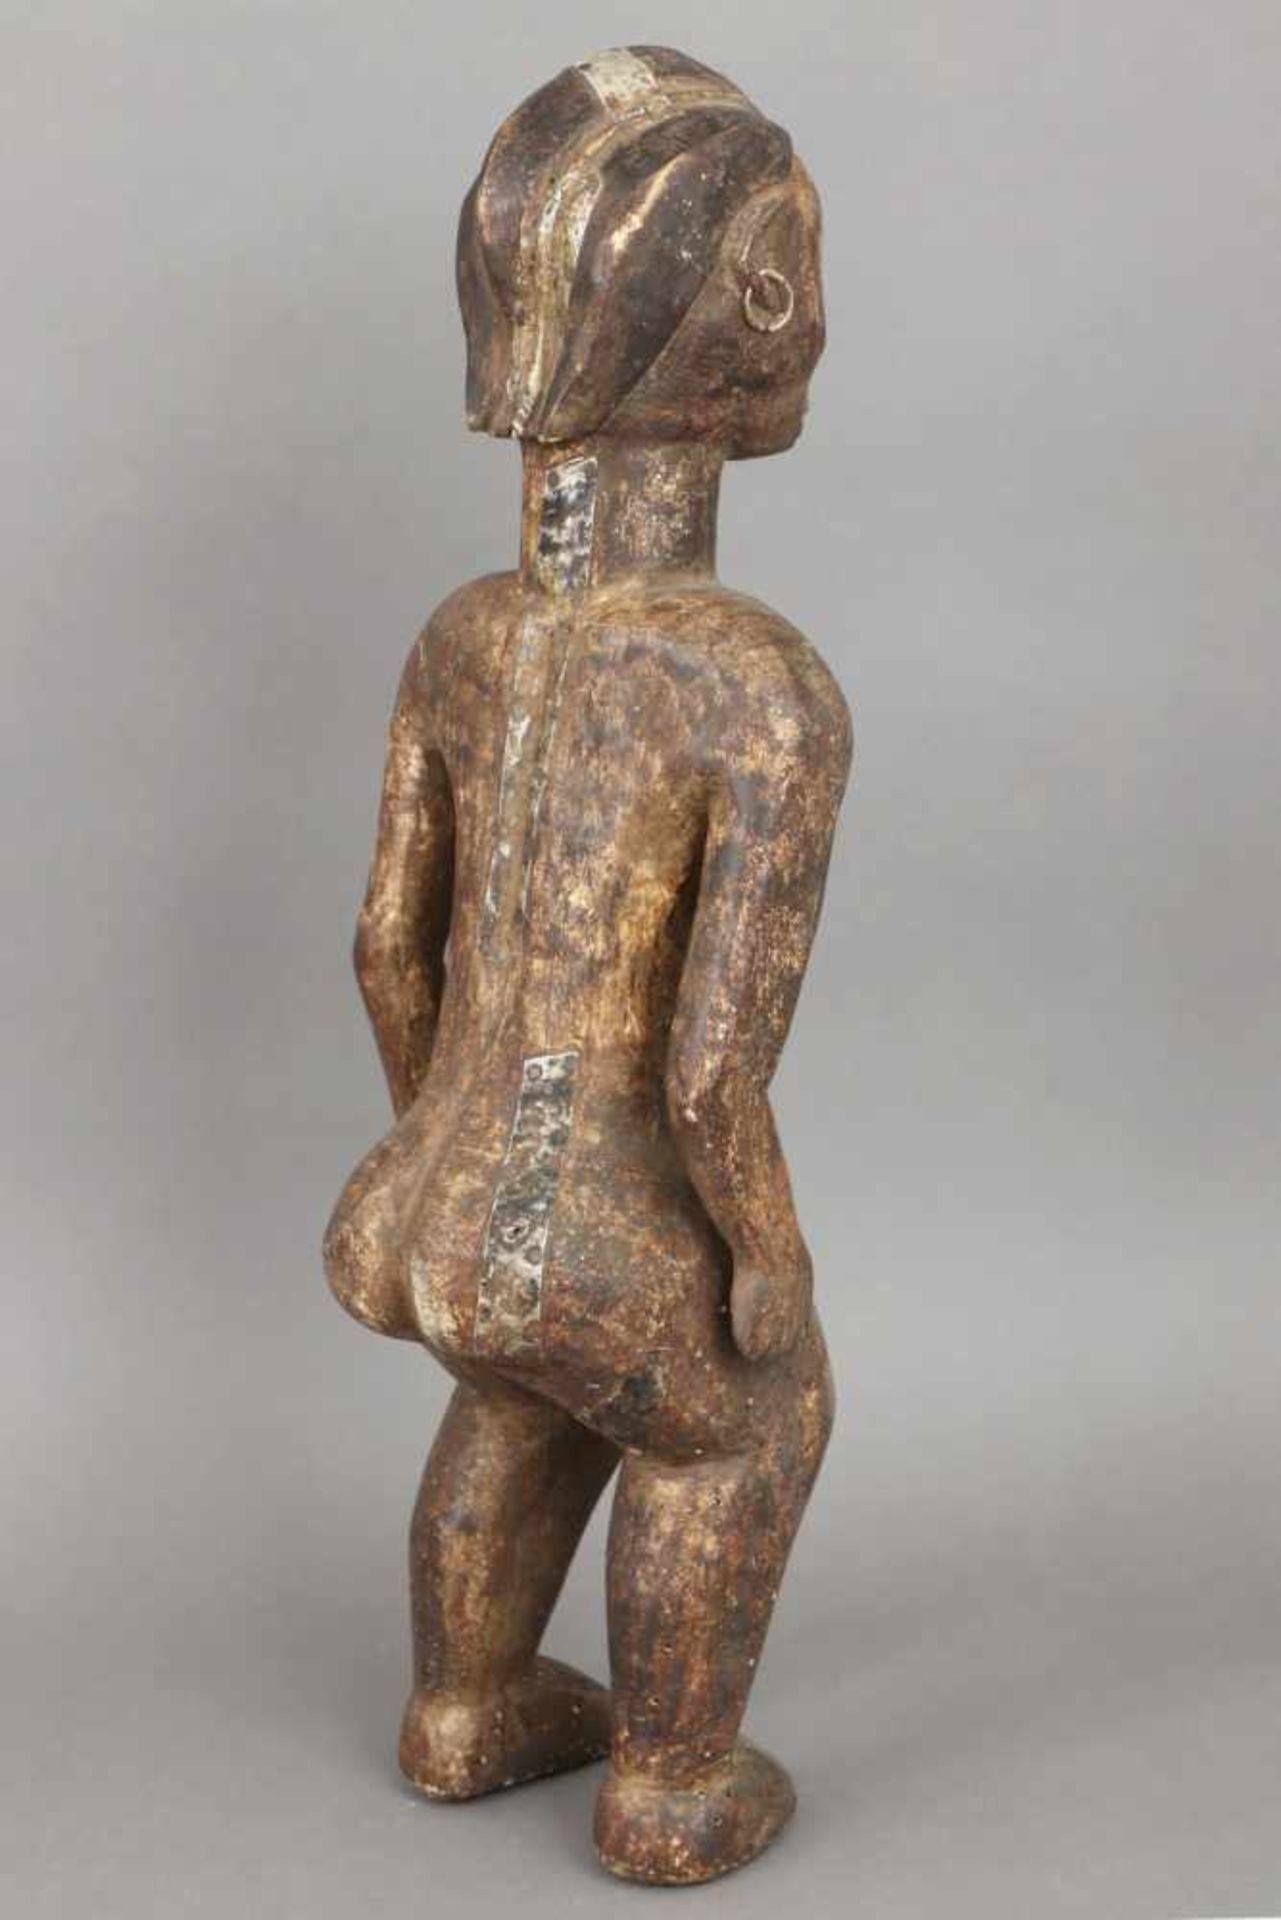 Afrikanische Ritual-/Ahnenfigur Holz, geschnitzt und dunkel patiniert, Metallbeschläge, stehende - Image 3 of 4